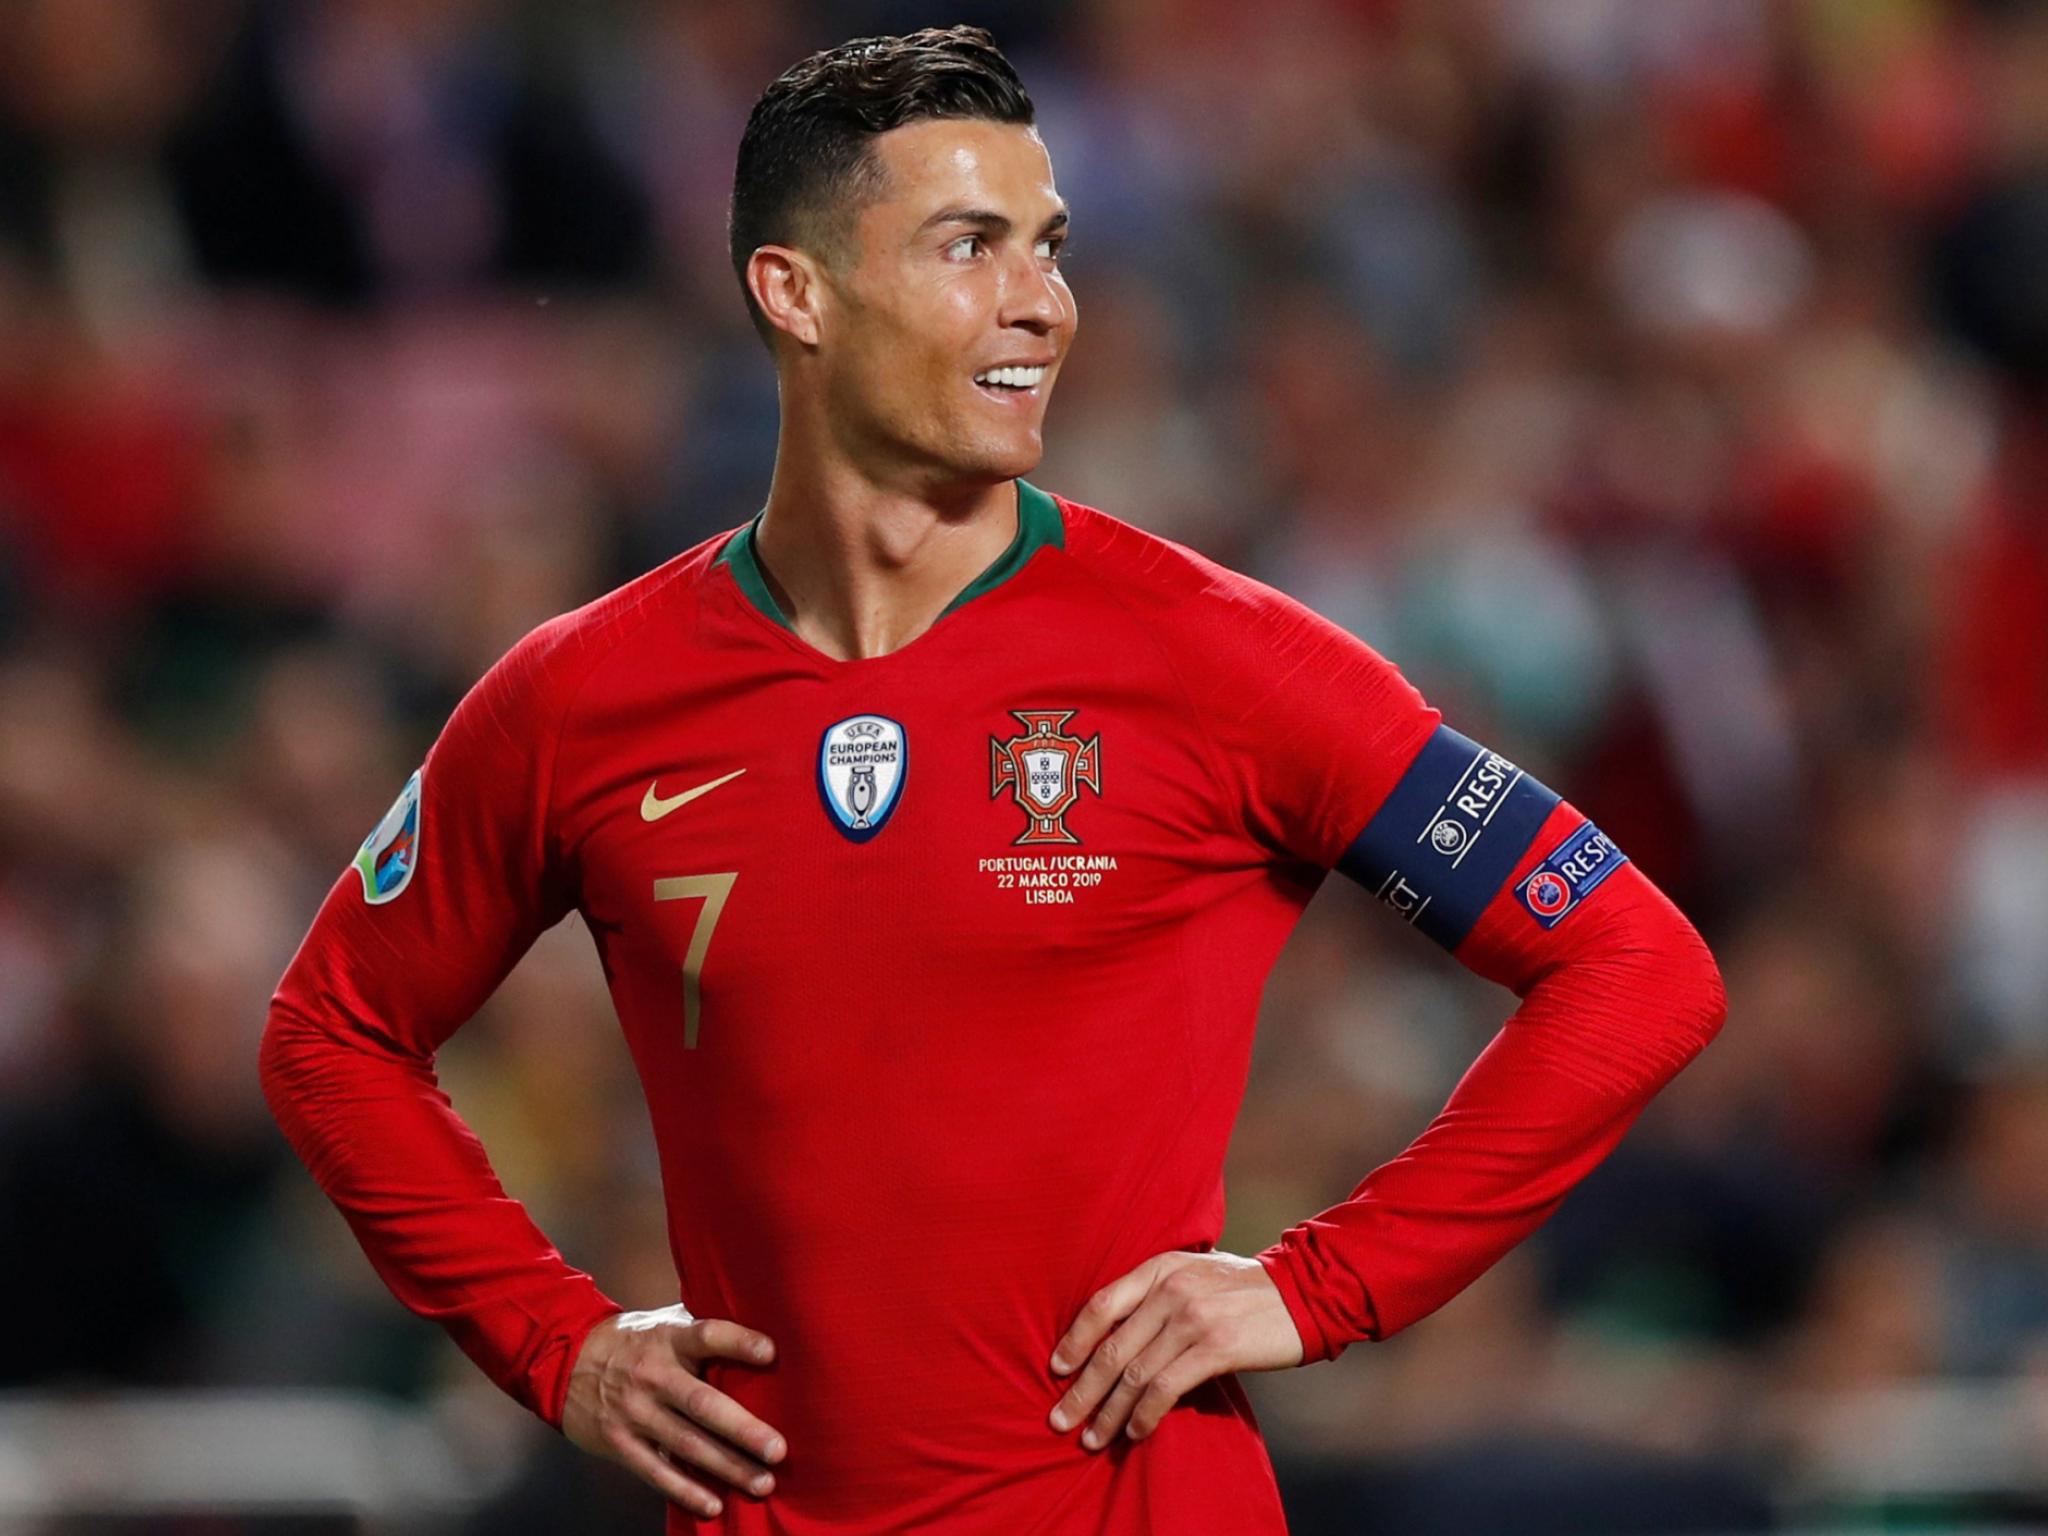 LDN : Grosse décision, ce Portugais portera le N°7 de Ronaldo contre la Suisse